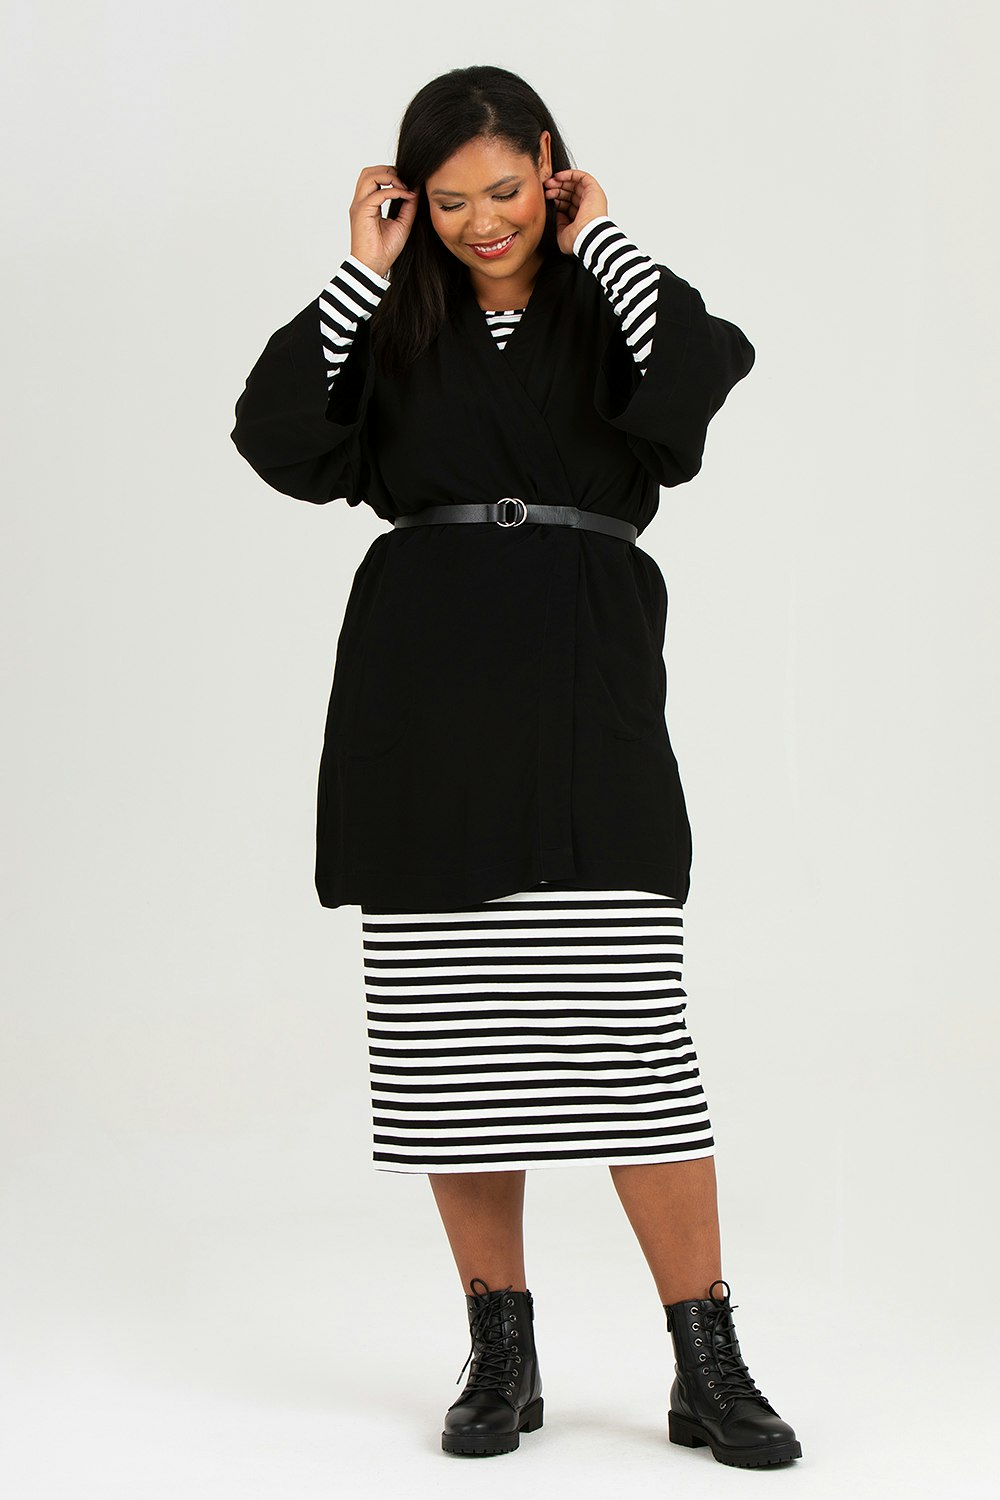 Bim skirt striped black/white